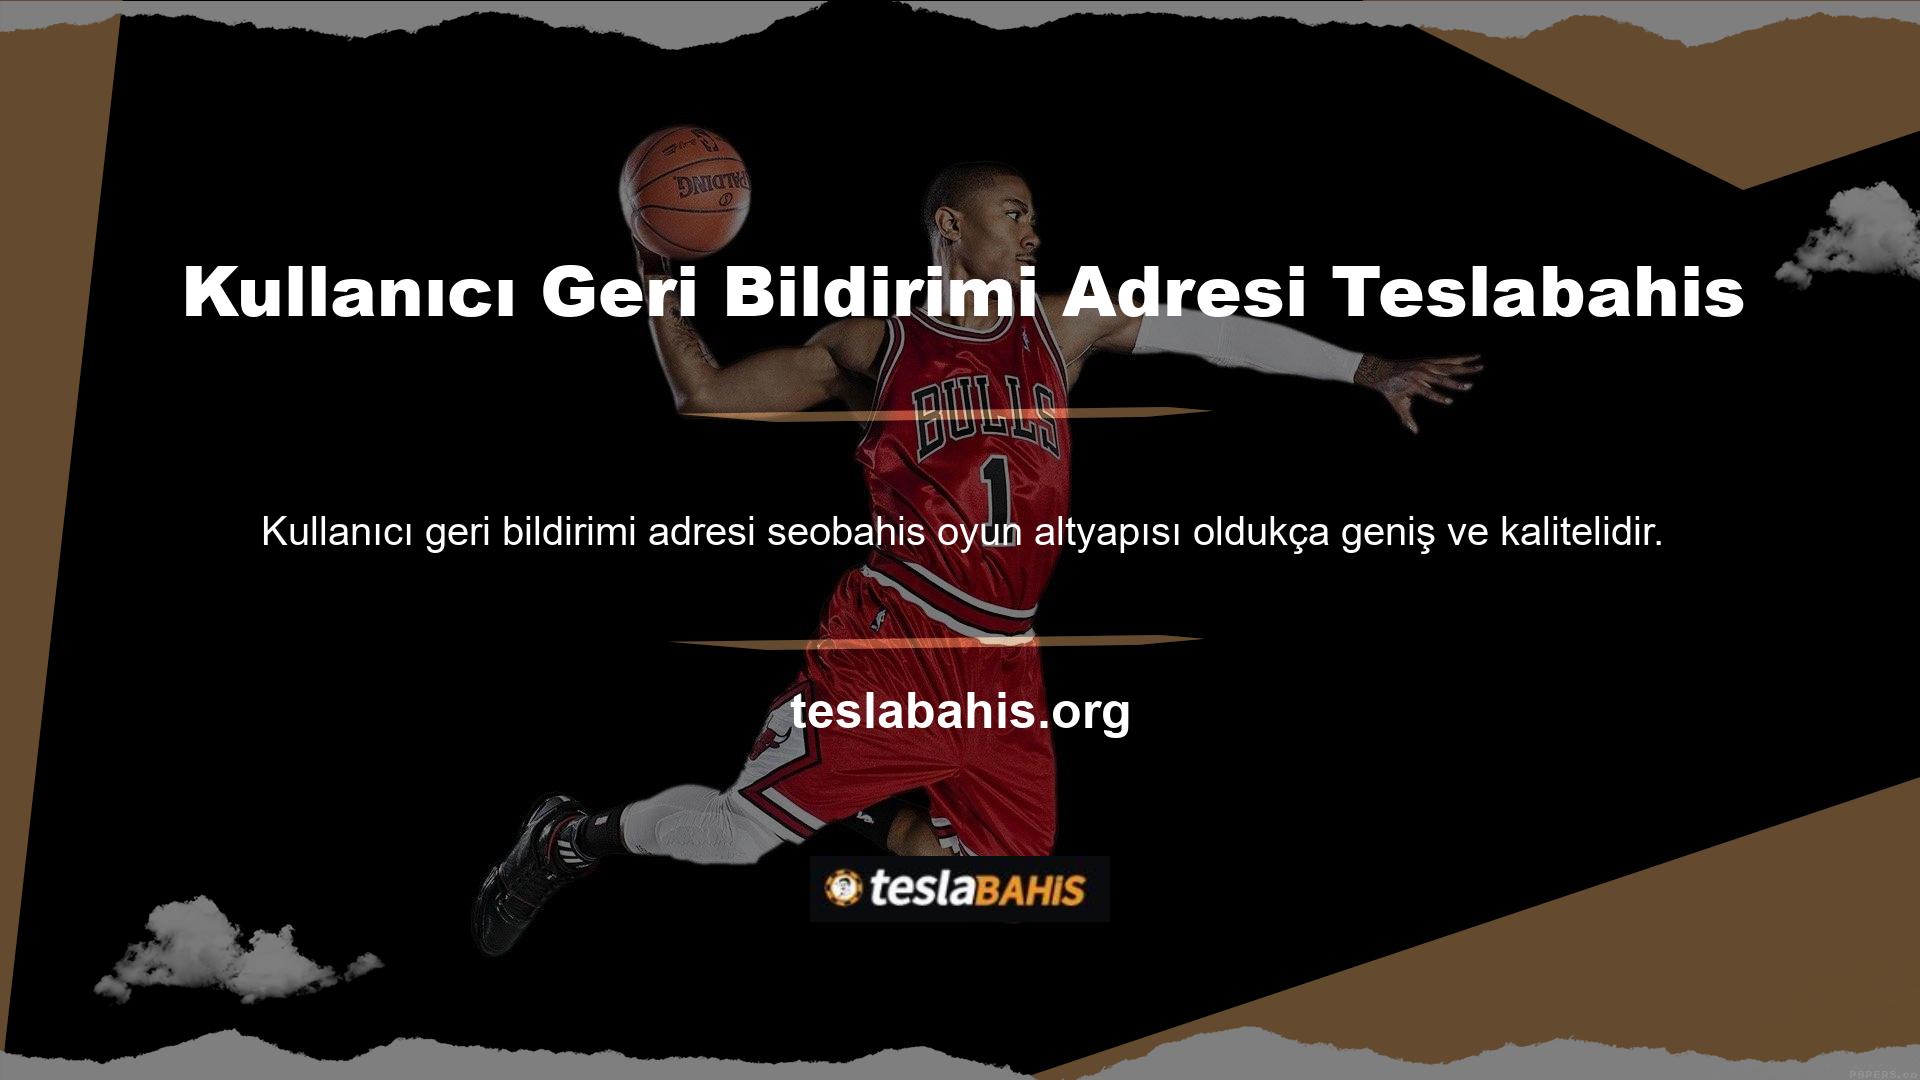 Teslabahis bahis sitesi, kullanıcı geri bildirimi için bir adrese sahiptir